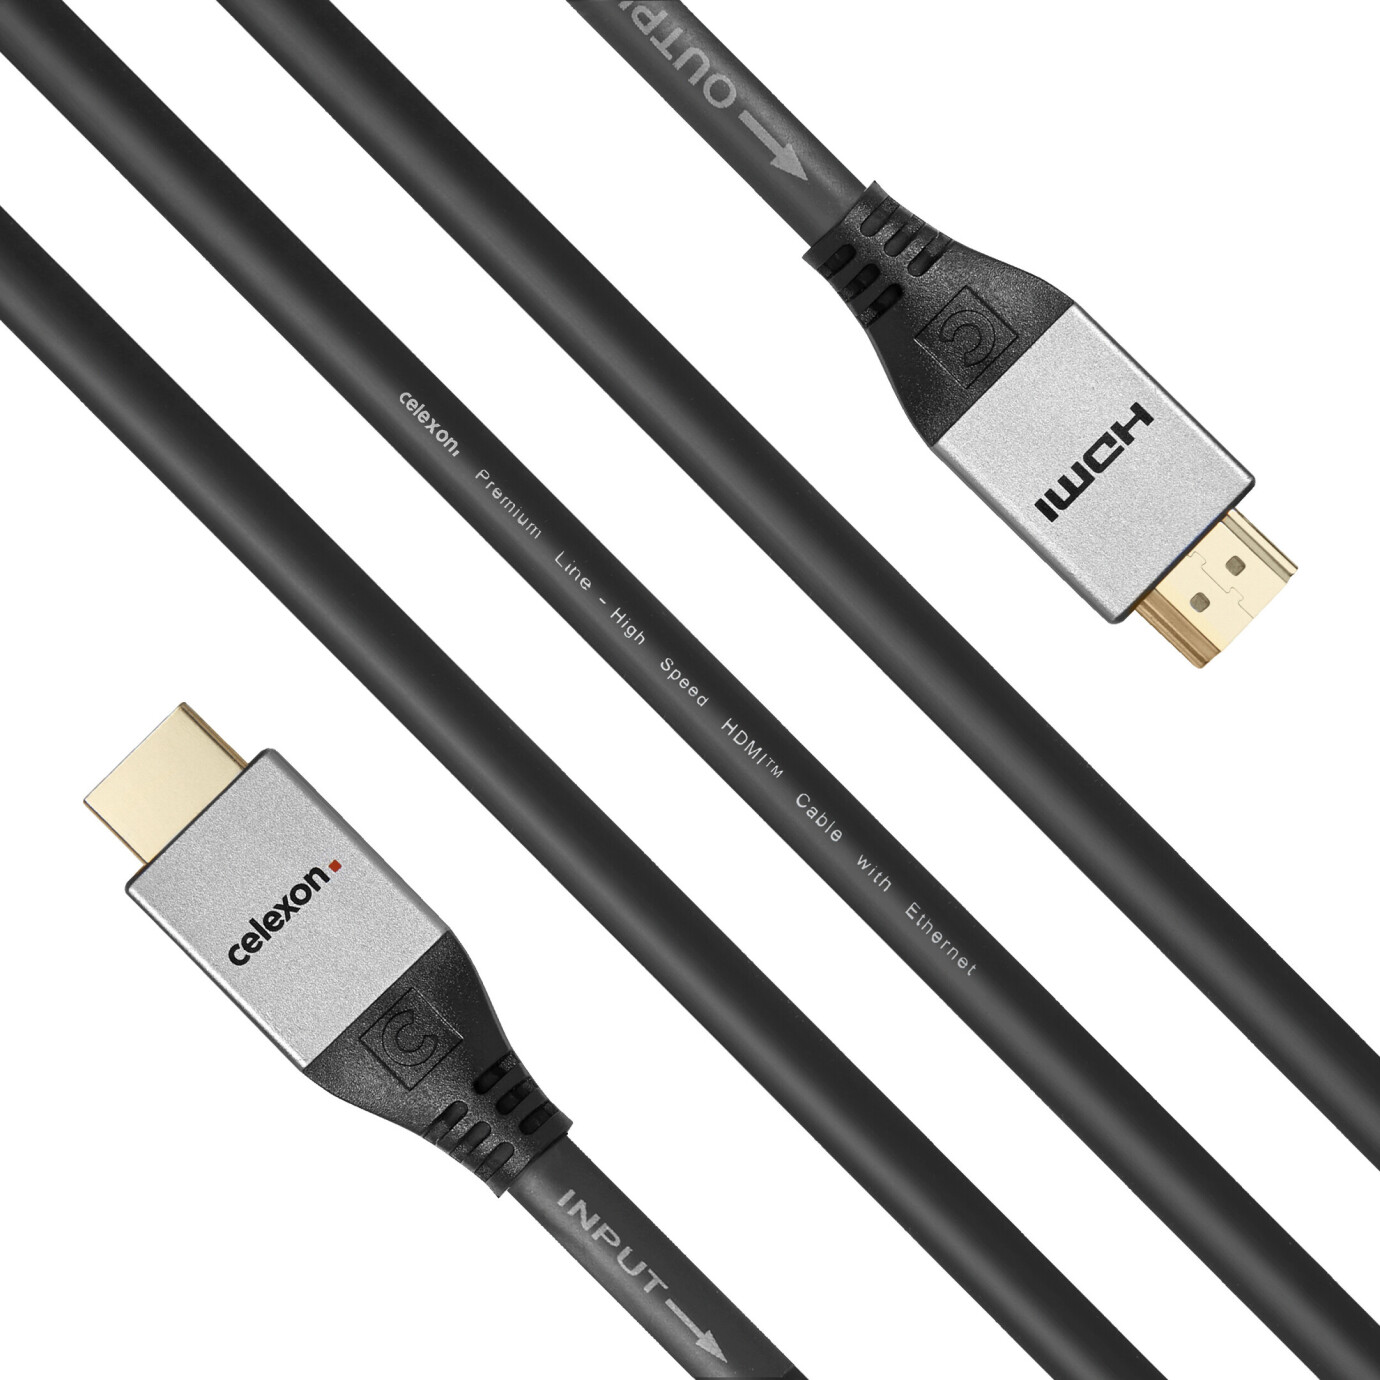 Vorschau: celexon aktives HDMI Kabel mit Ethernet - 2.0a/b 4K 20,0m - Professional Line